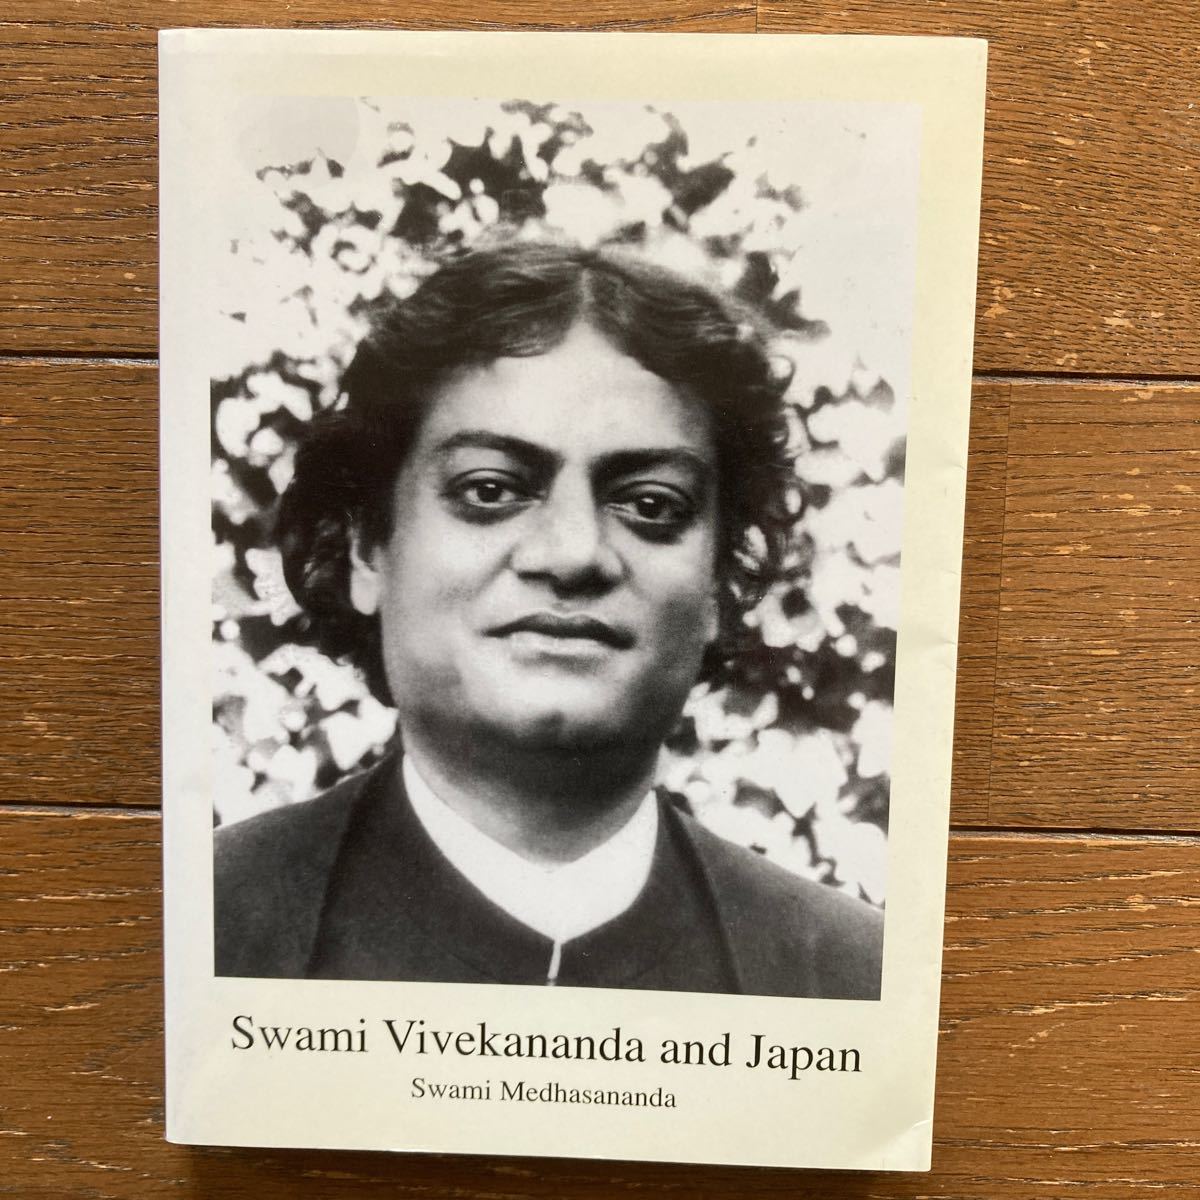 s Whammy * vi ve- Carna nda[Swami Vivekananda and Japan|Swami Medhasananda] Япония ve-da-nta ассоциация *2009 год no. 1.( английская версия )